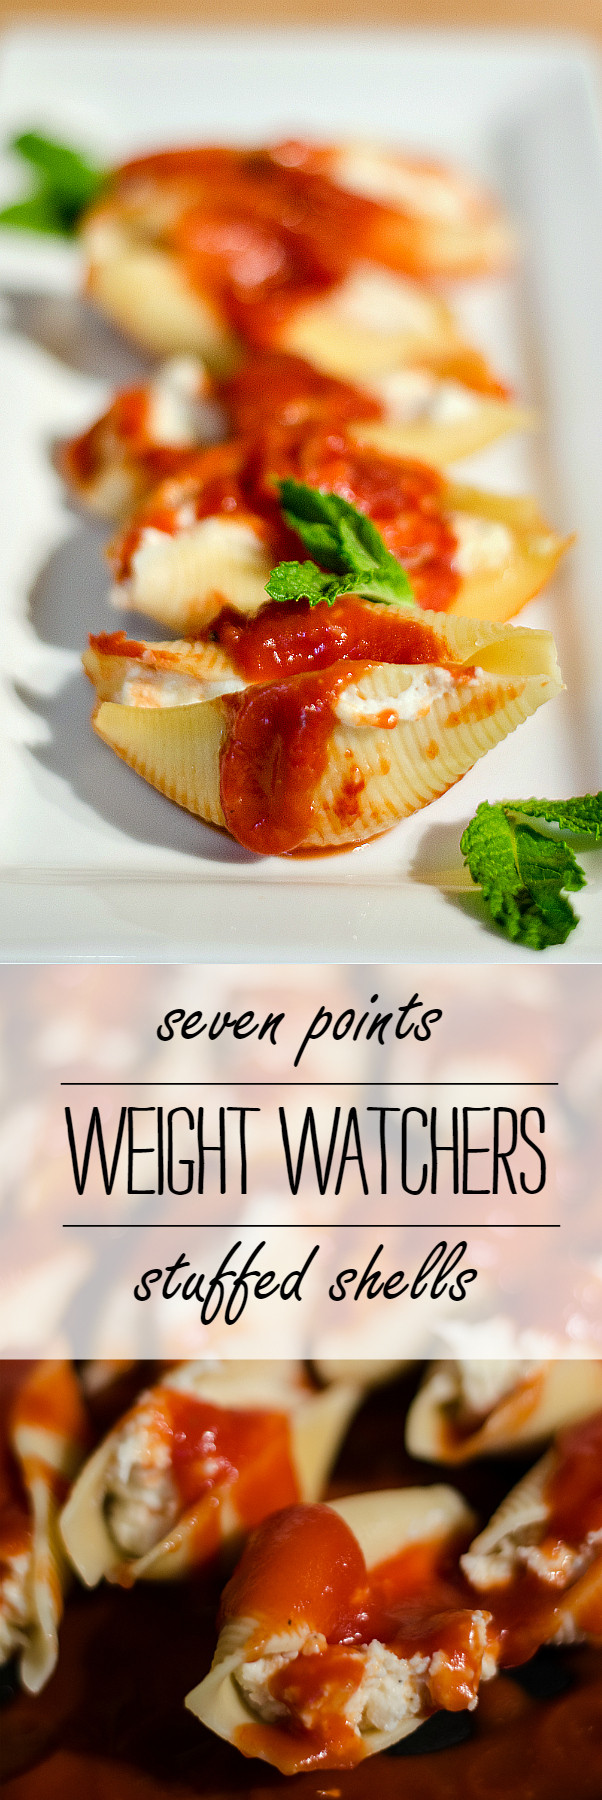 Weight Watcher Dinner Recipes
 Weight Watchers Stuffed Shells